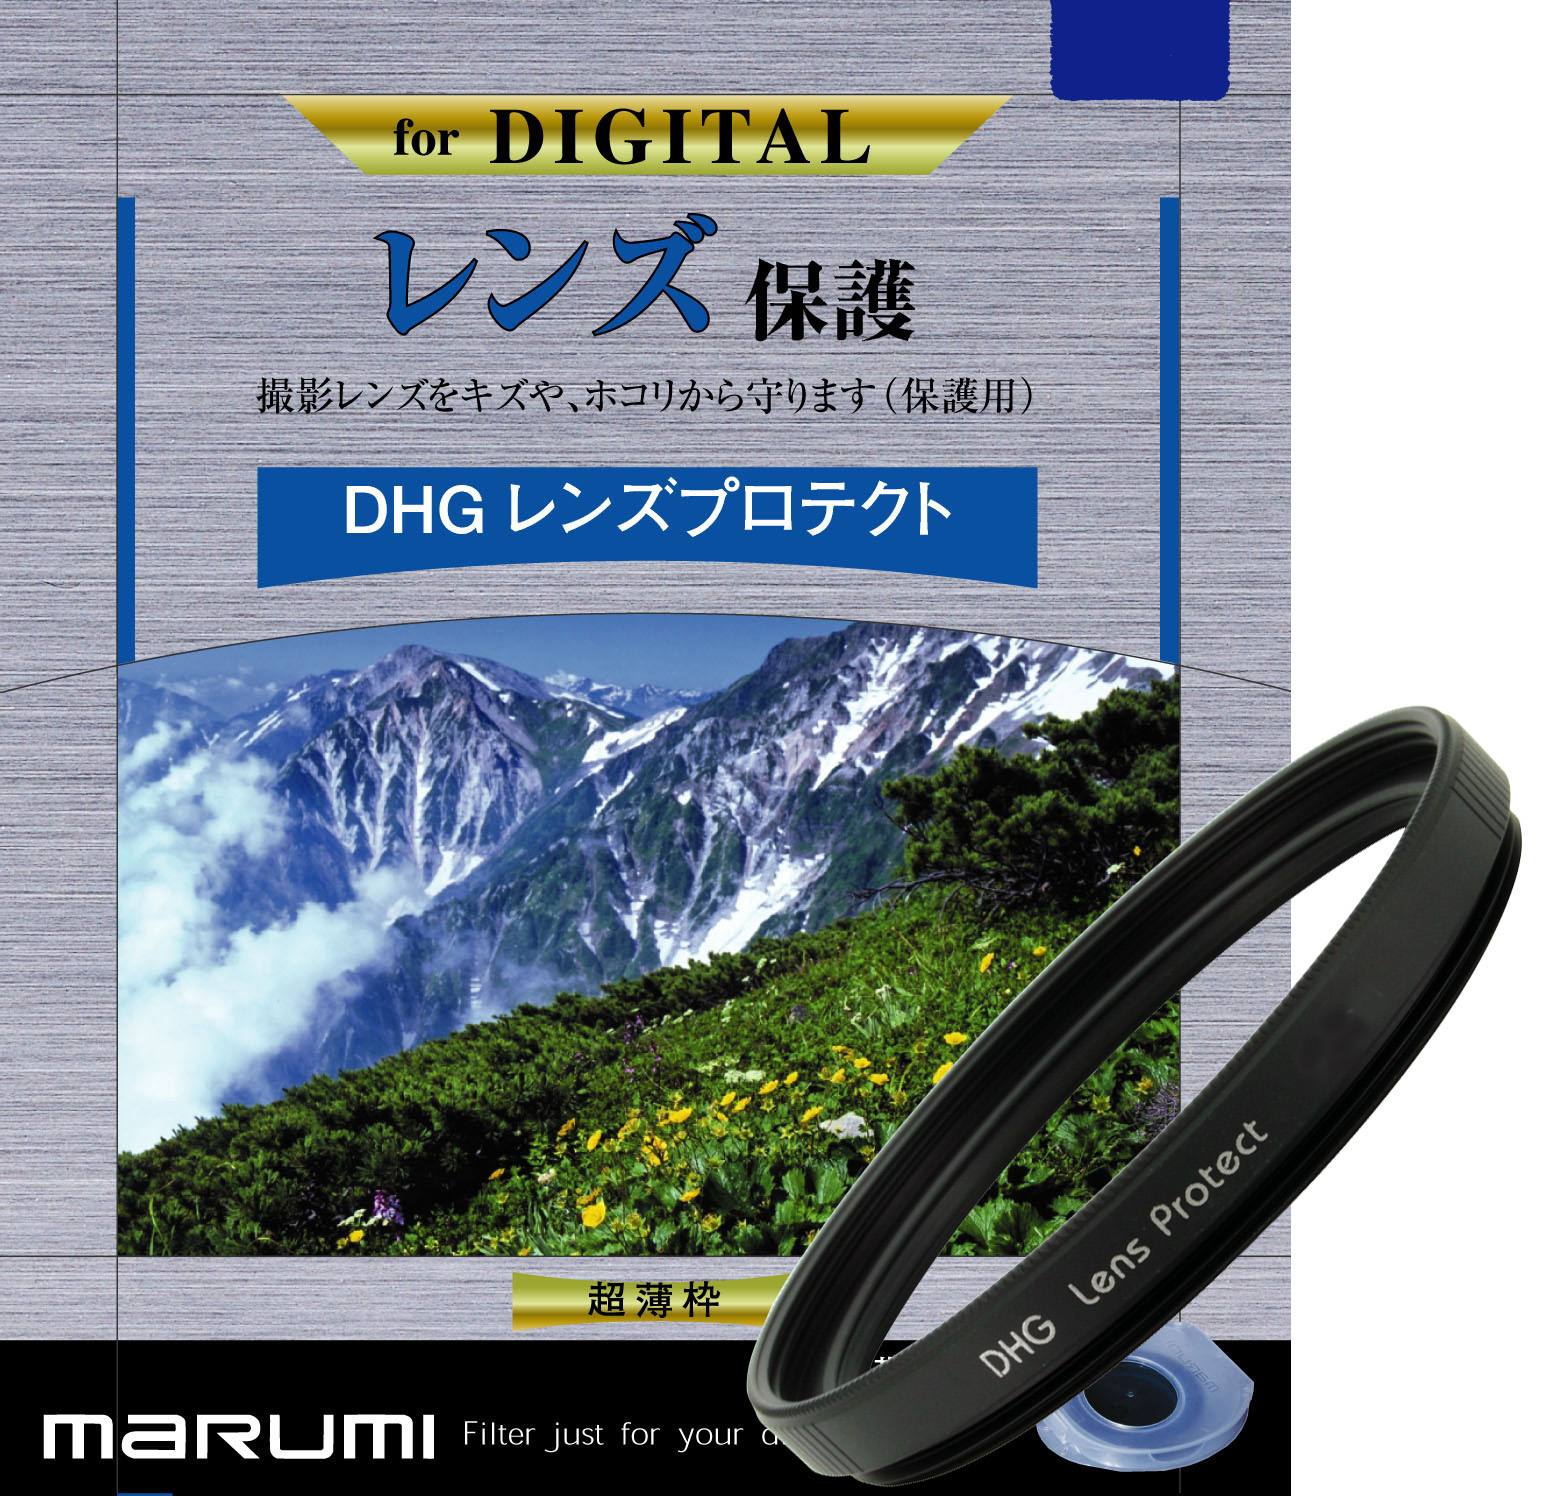 マルミ  DHG レンズプロテクト 67mm [プロテクター] MARUMI